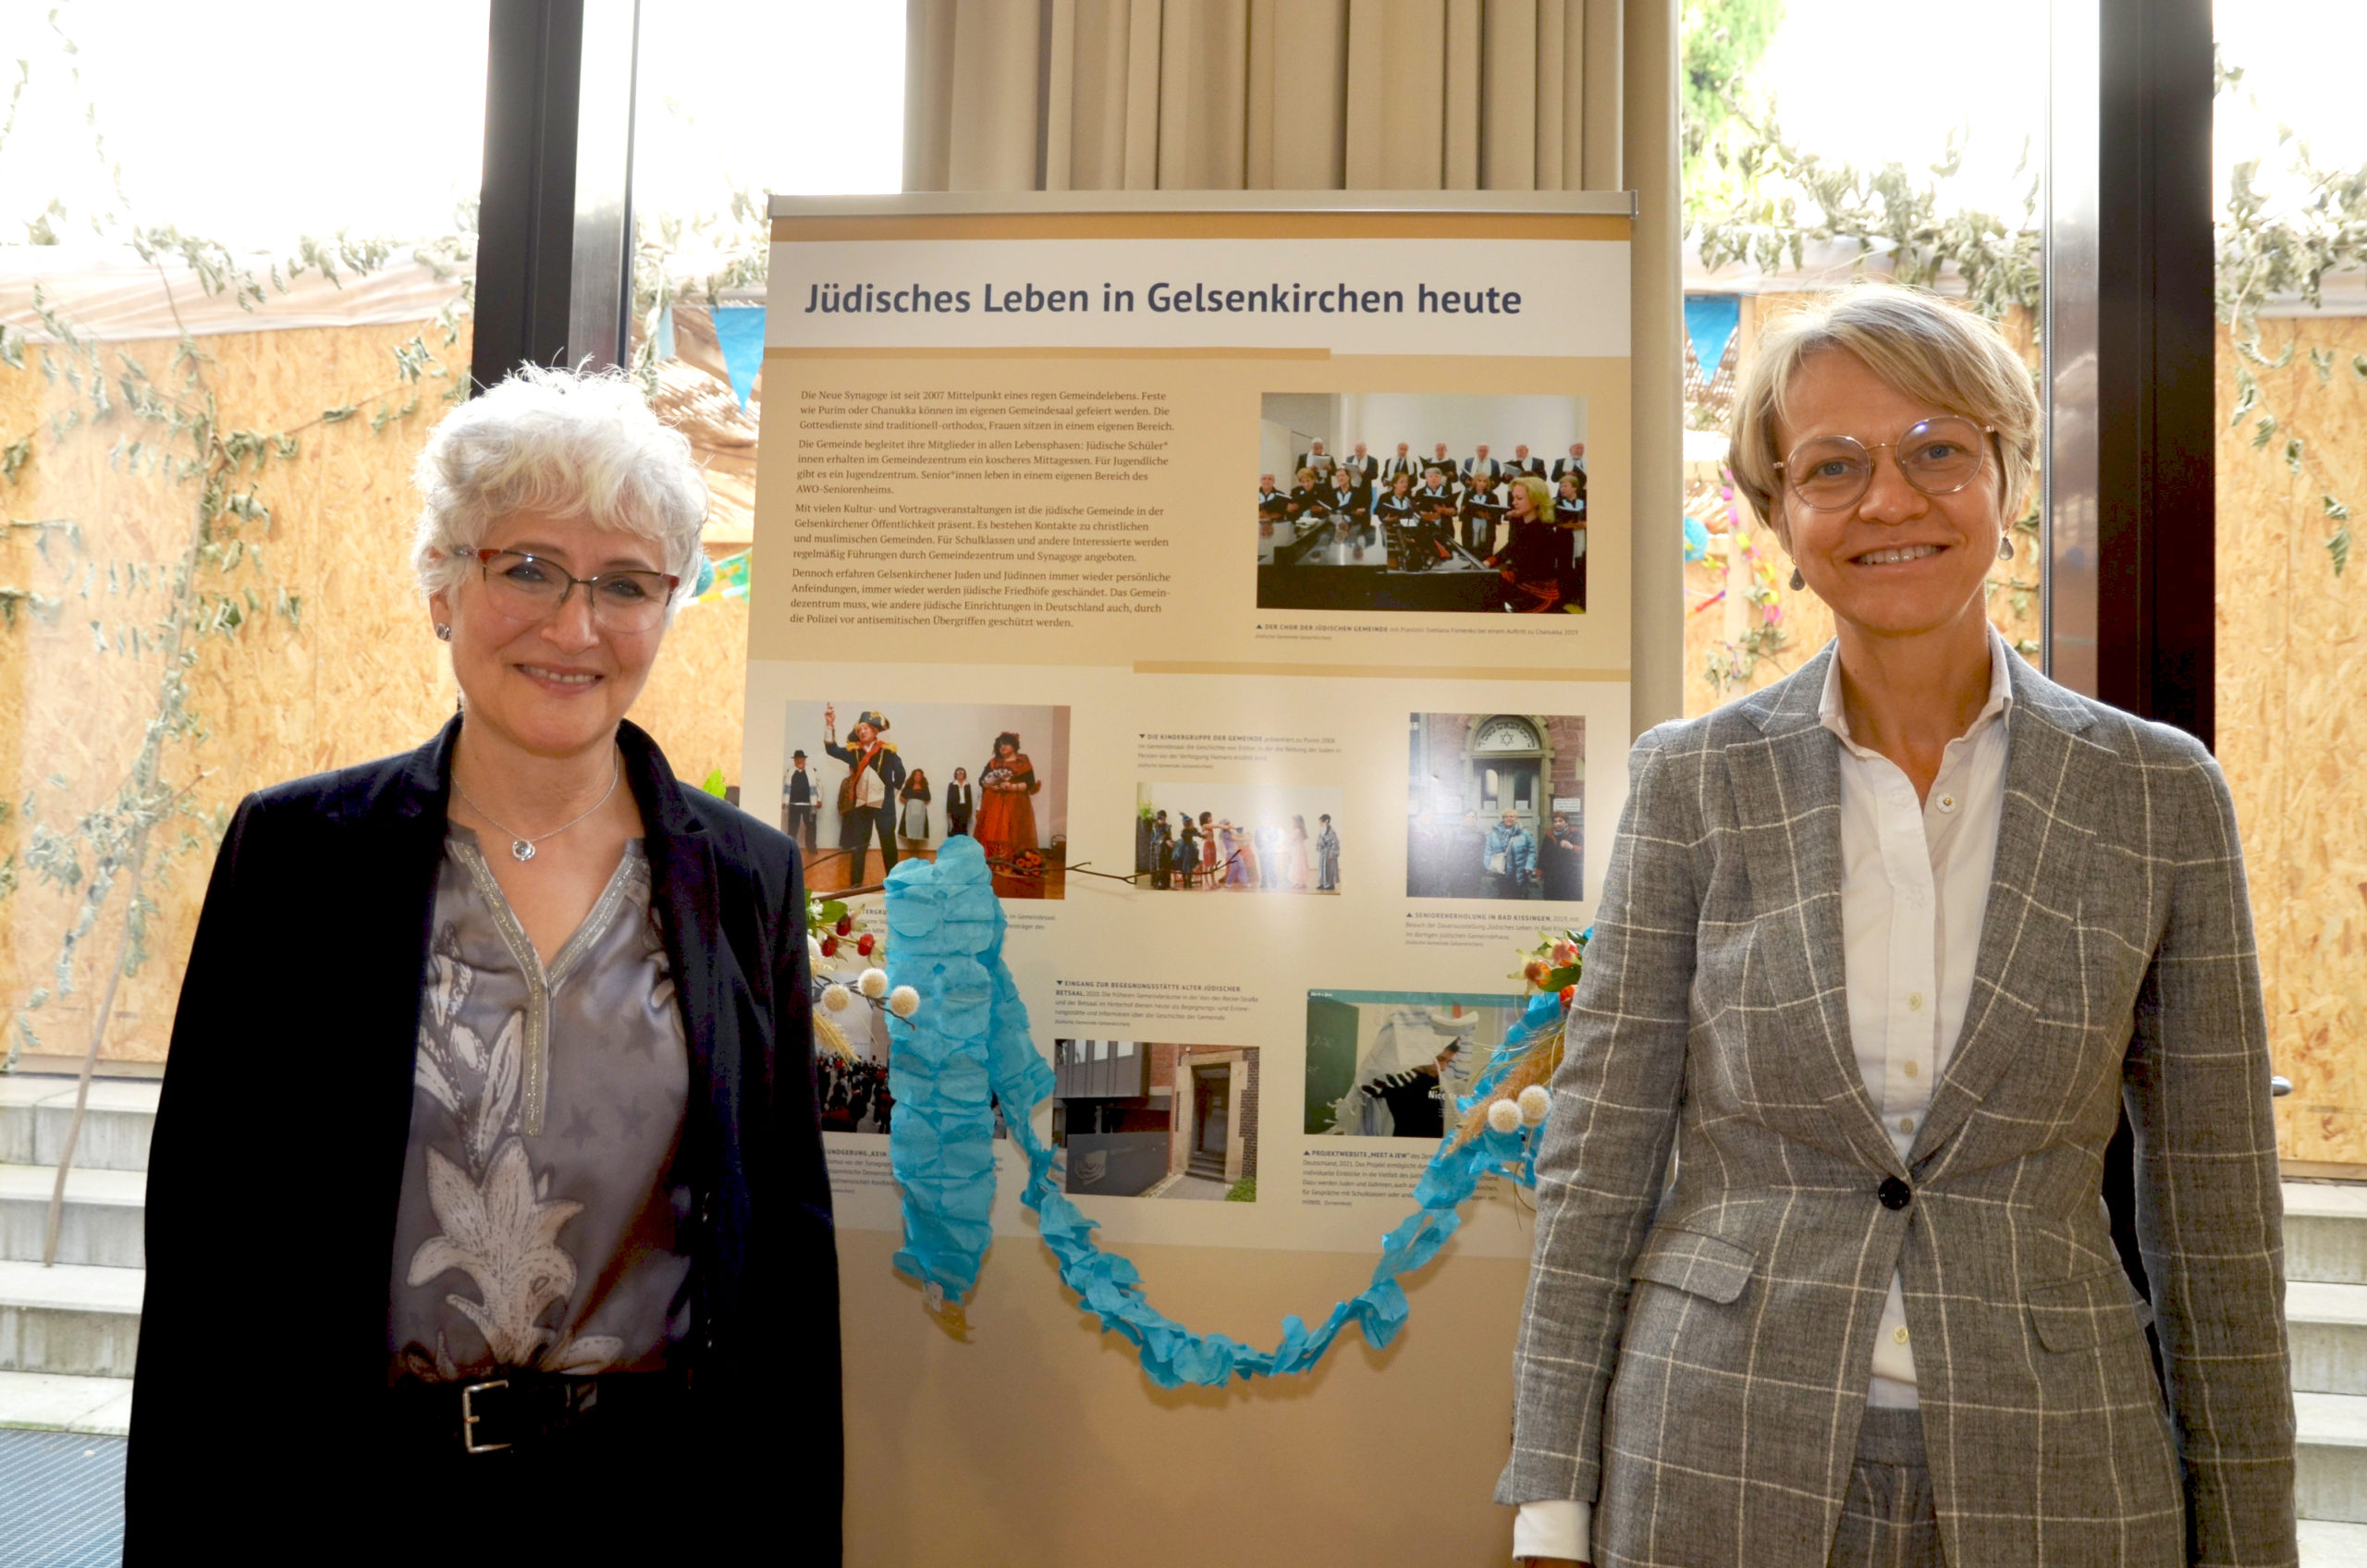 Regierungspräsidentin Dorothee Feller hat die jüdische Gemeinde Gelsenkirchen besucht. Thema war unter anderem die antisemitische Demonstration vom 12. Mai.